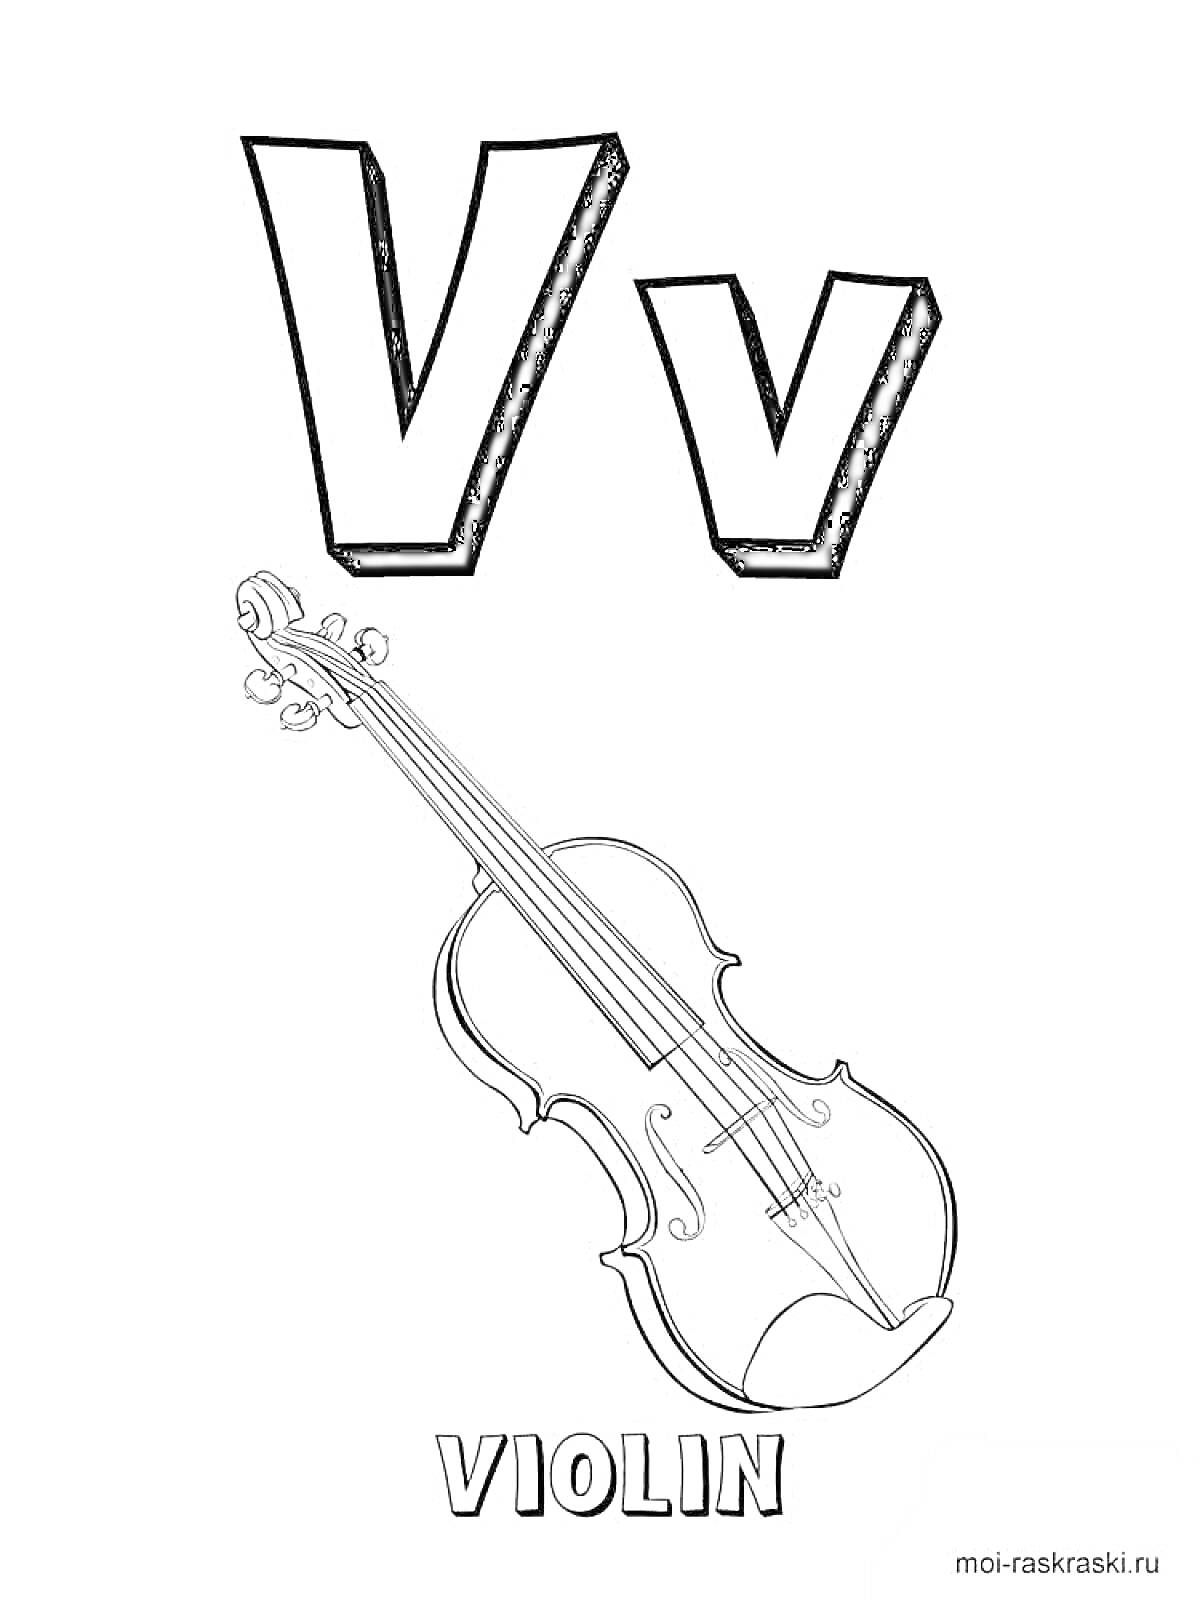 Раскраска Буква V с изображением скрипки (violin)